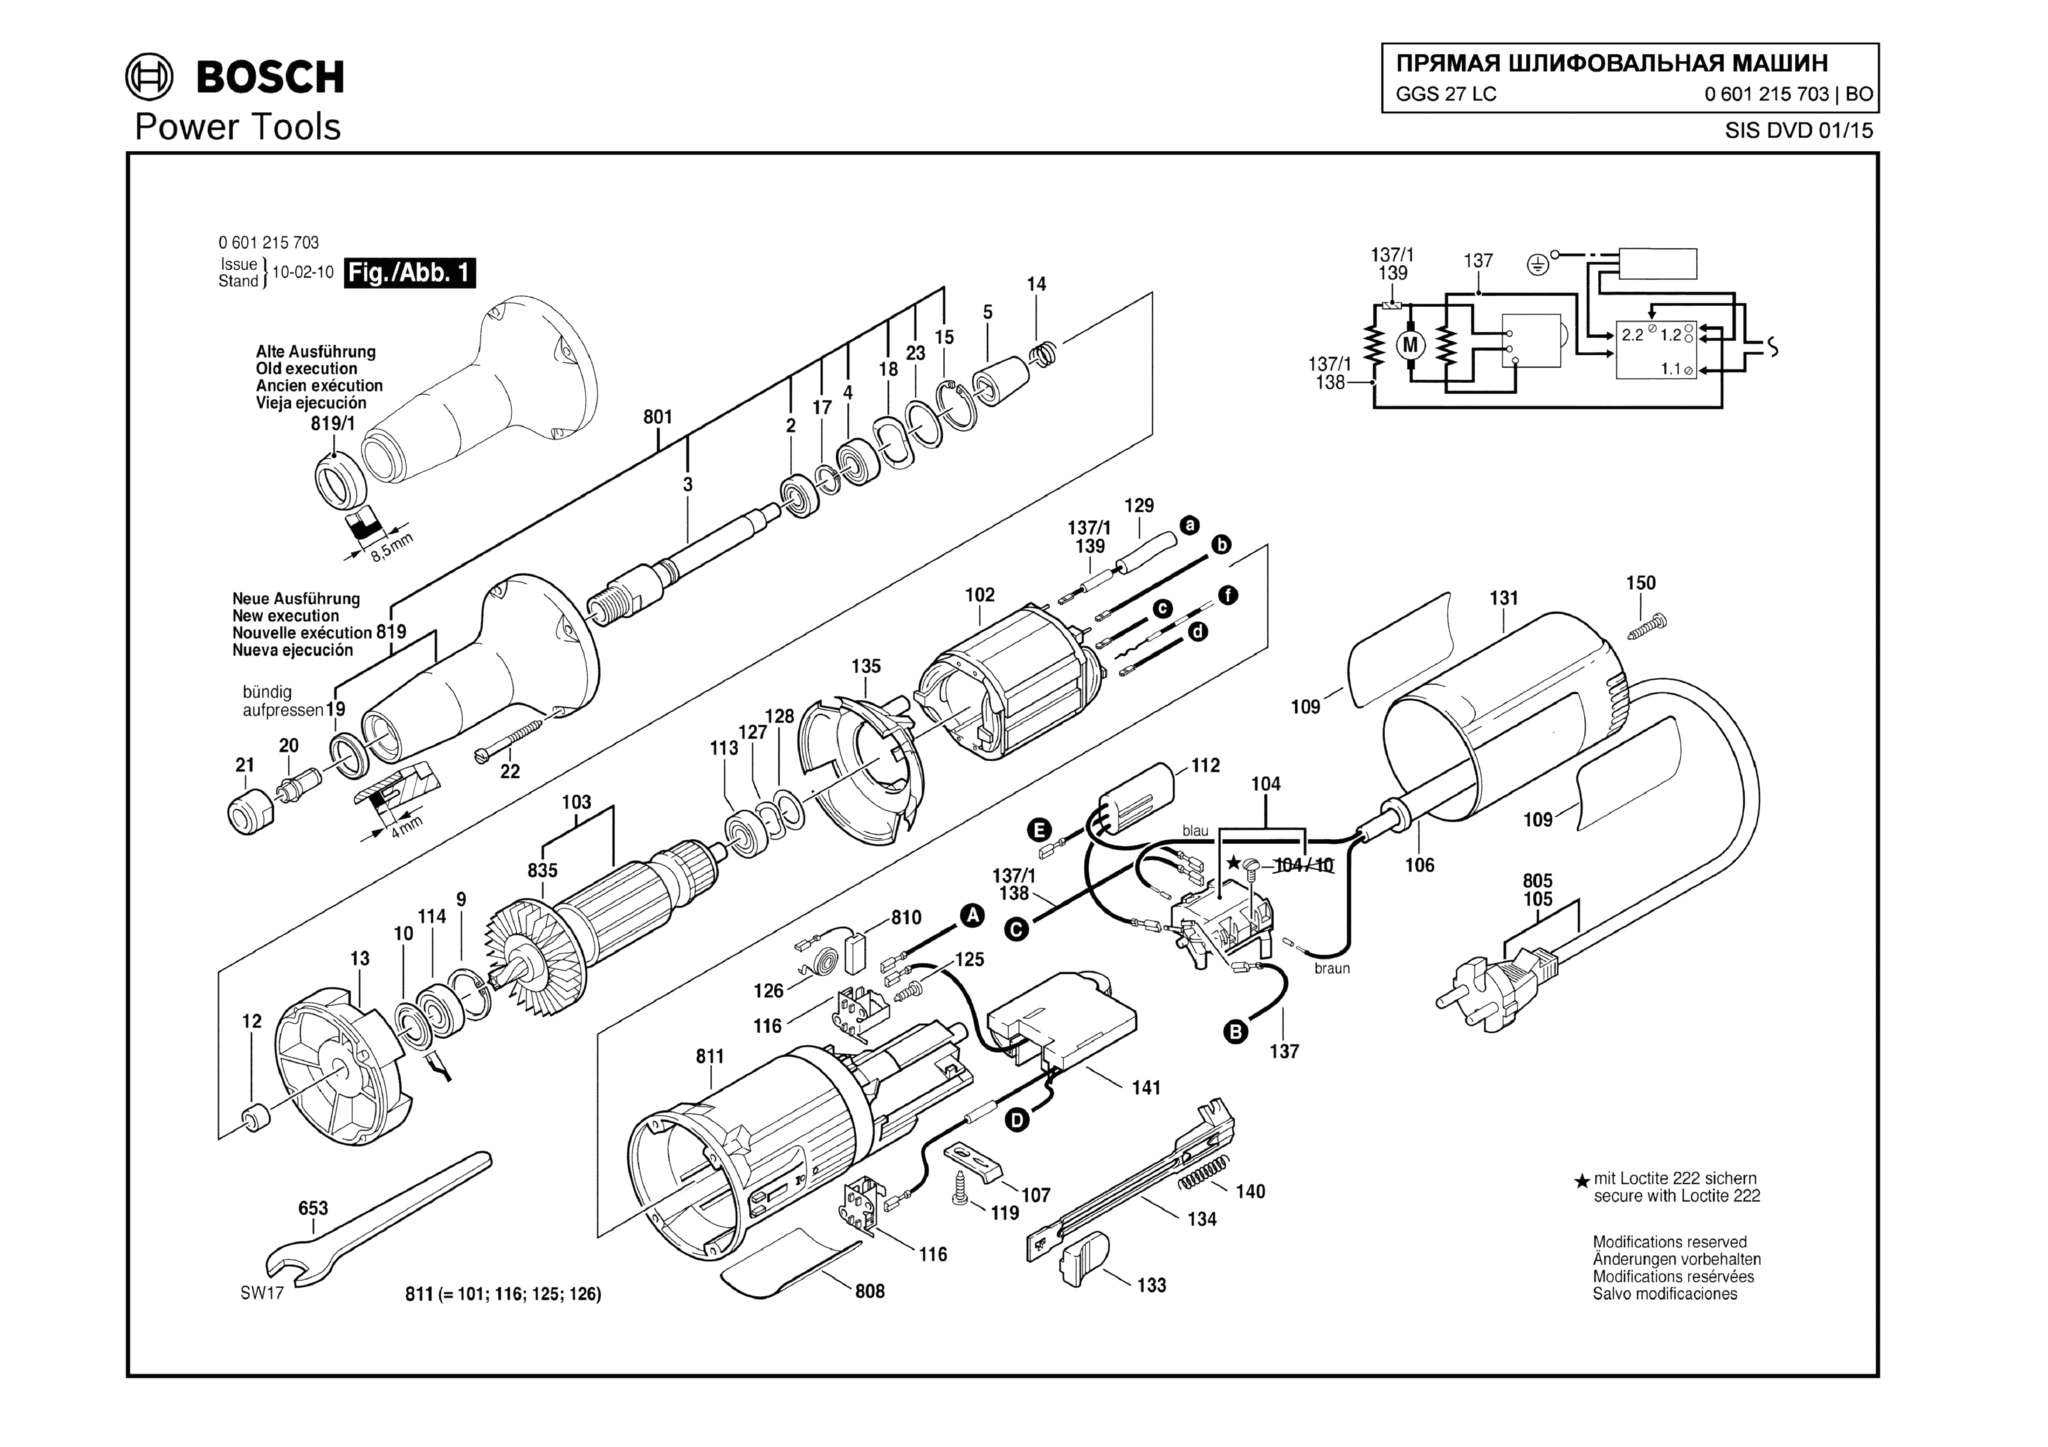 Запчасти, схема и деталировка Bosch GGS 27 LC (ТИП 0601215703)